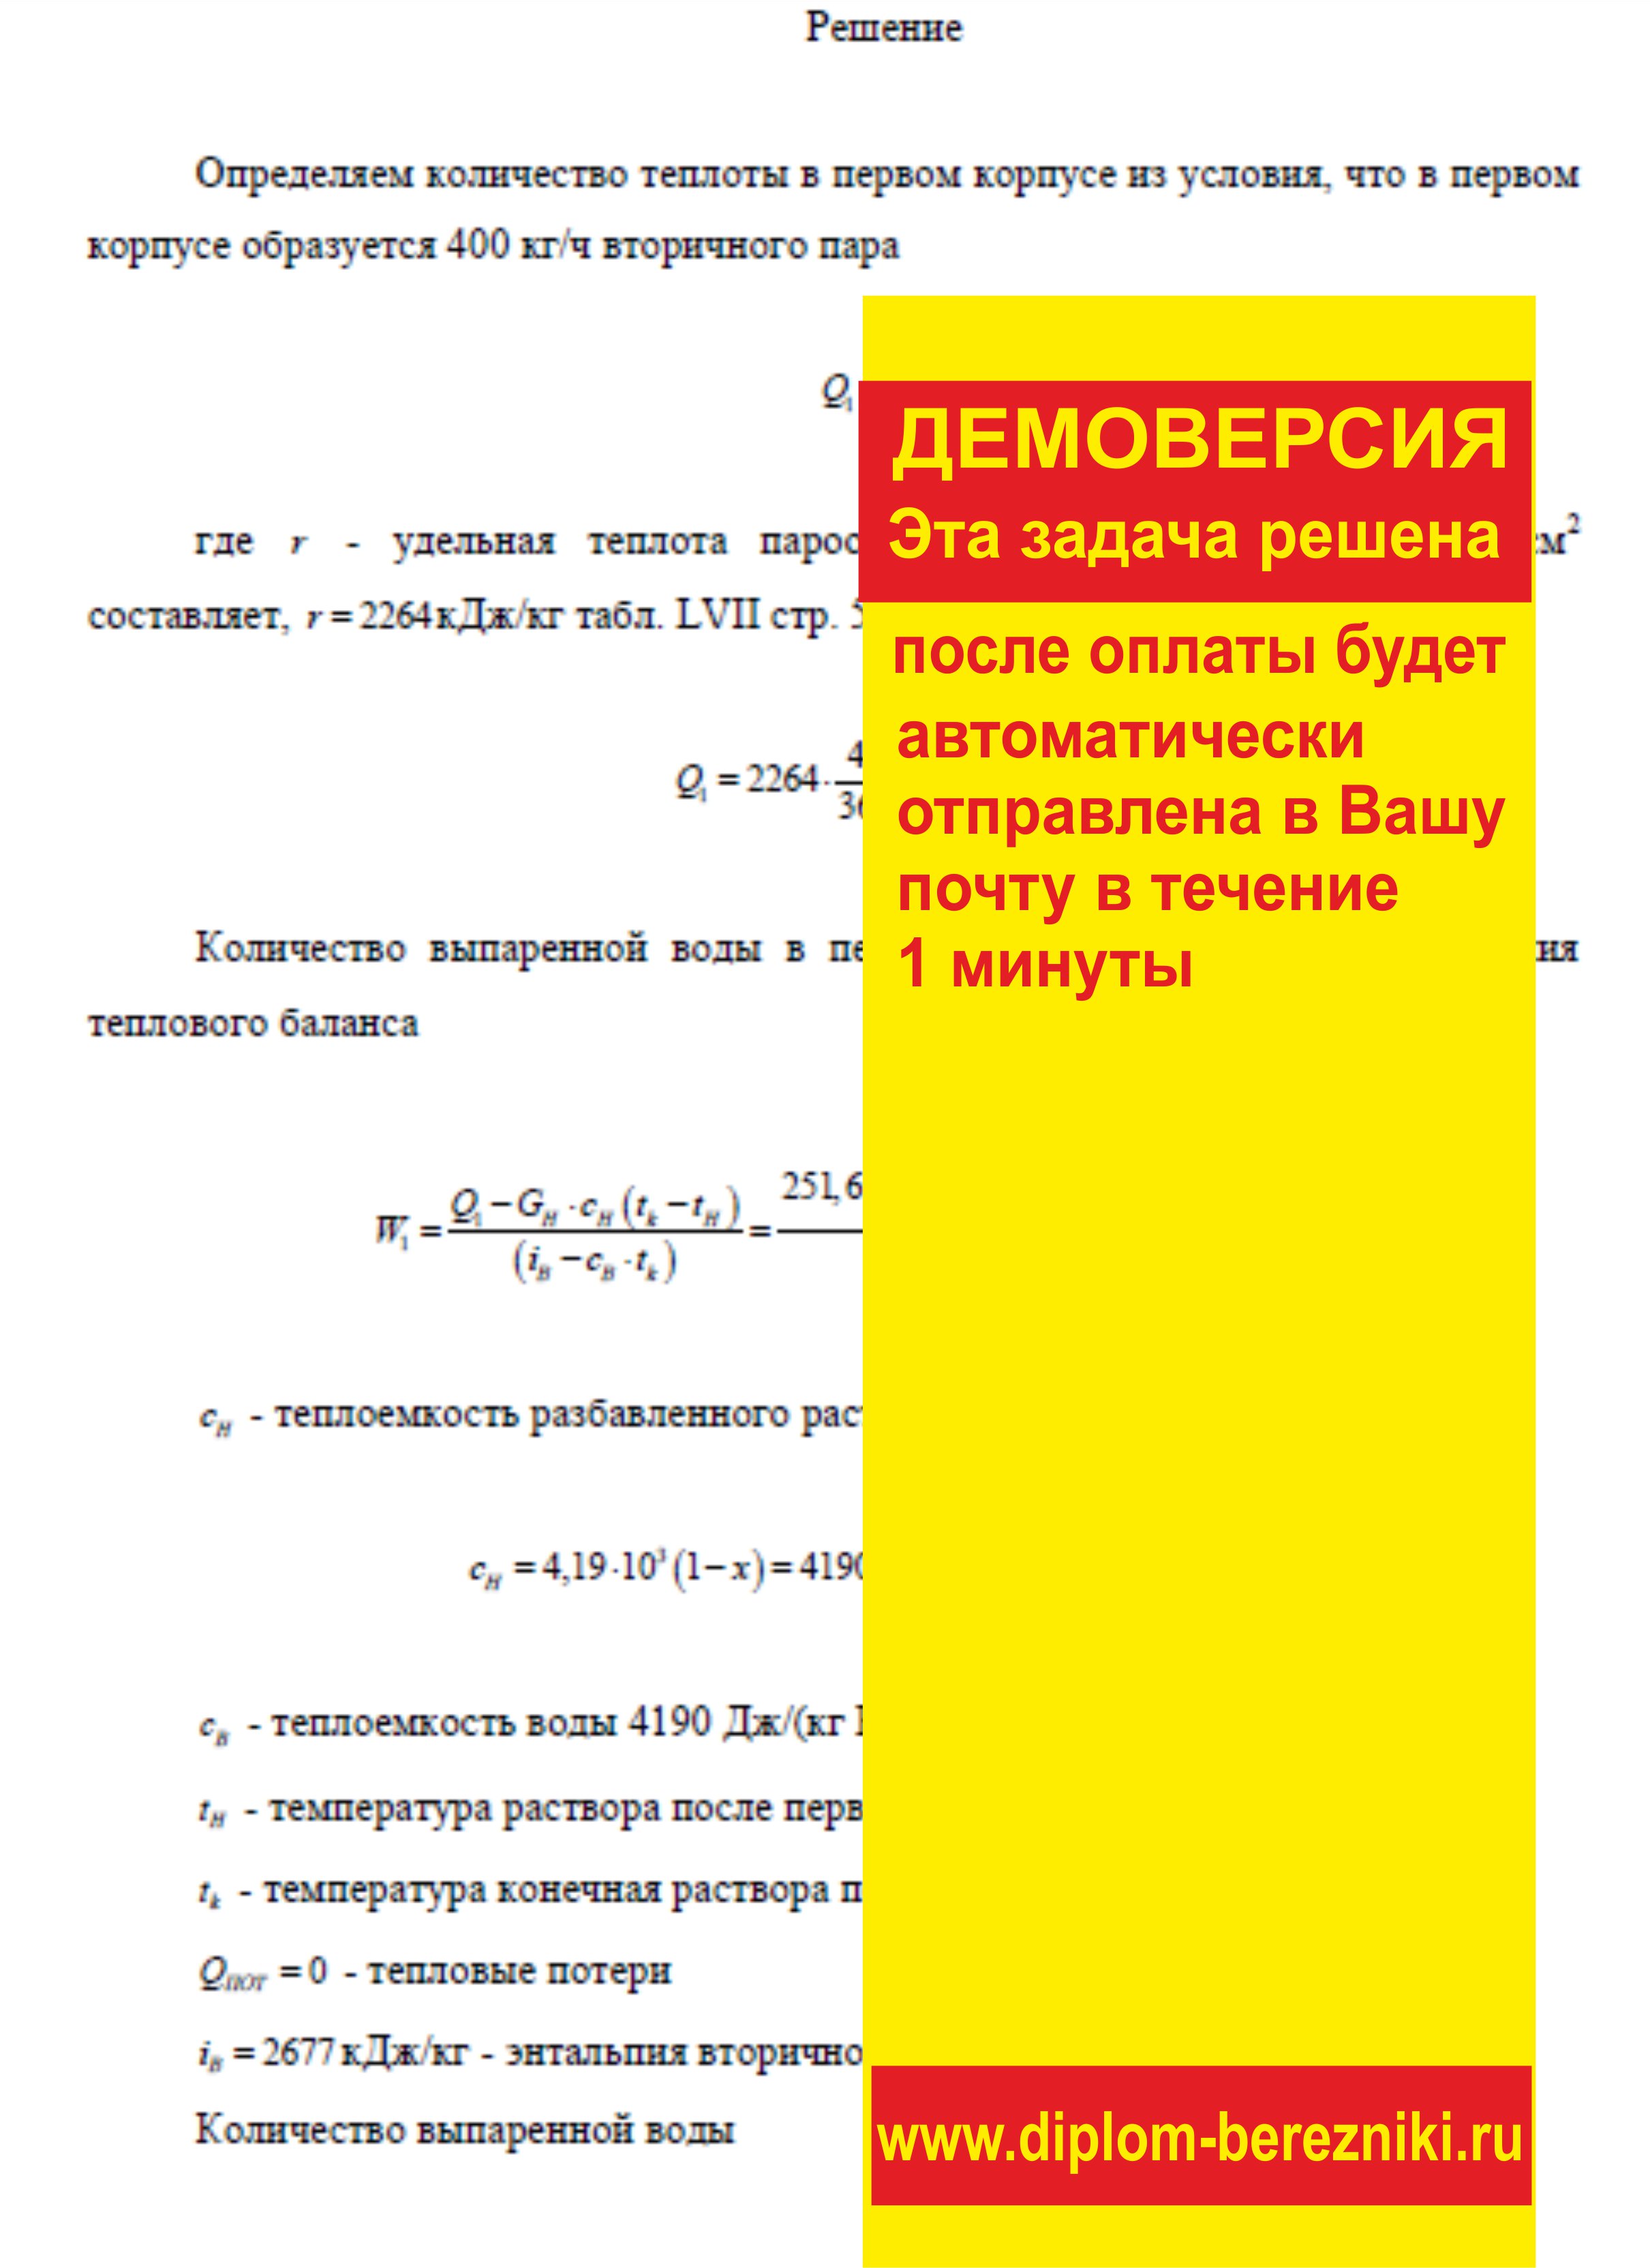 Решение задачи 5.33 по ПАХТ из задачника Павлова Романкова Носкова